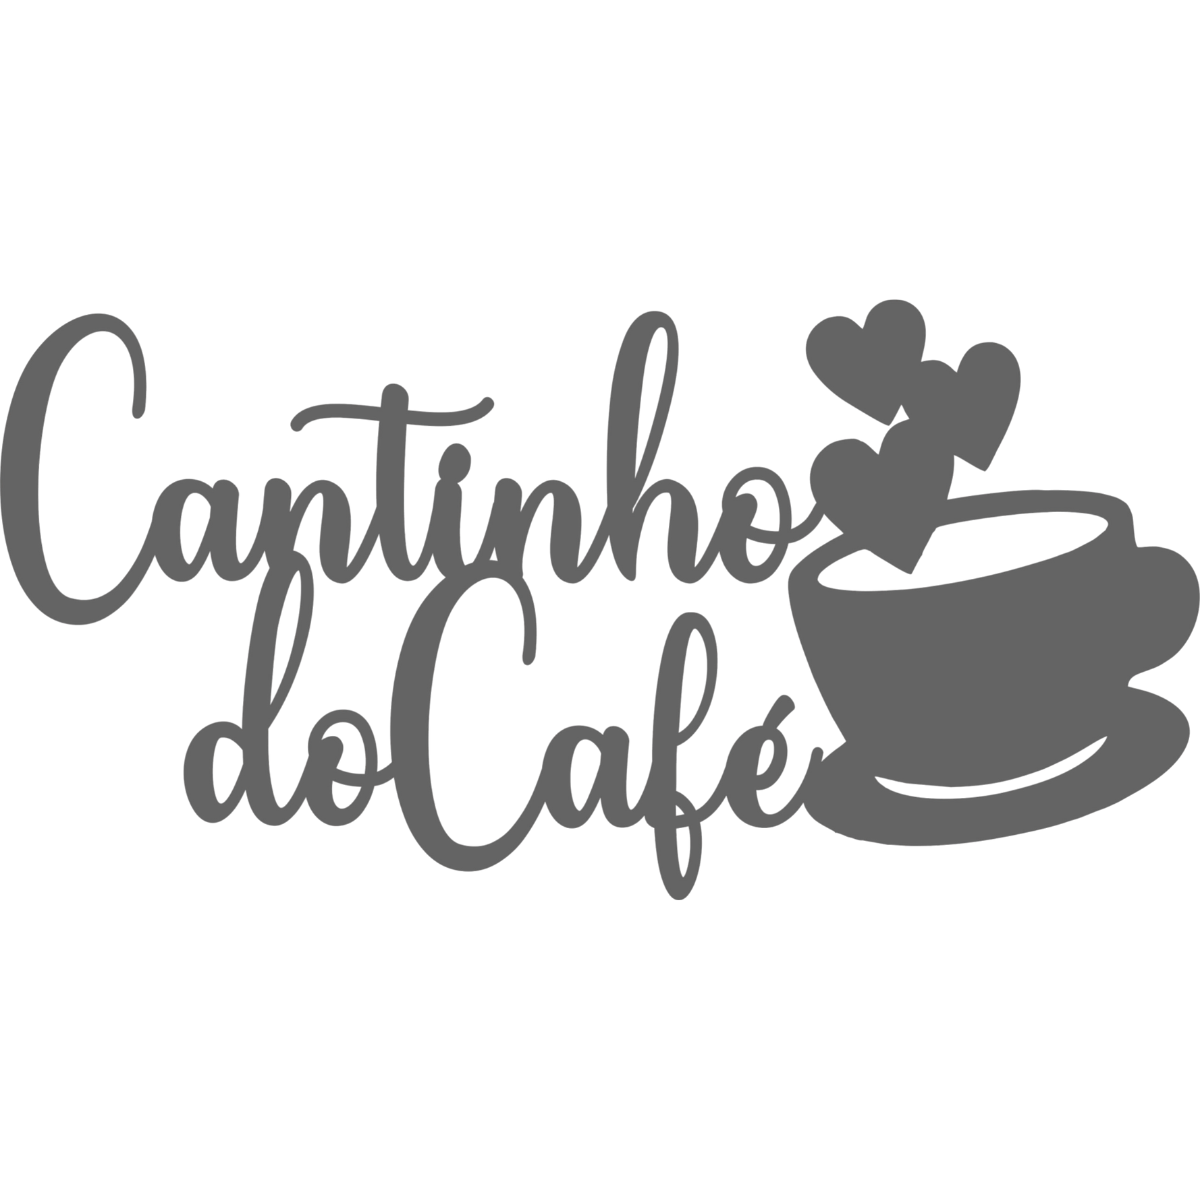 Cantinho do Cafe - Xícara - Decorativo - MDF - Preto - Plaquinha Buffet cozinha - 58x30cm